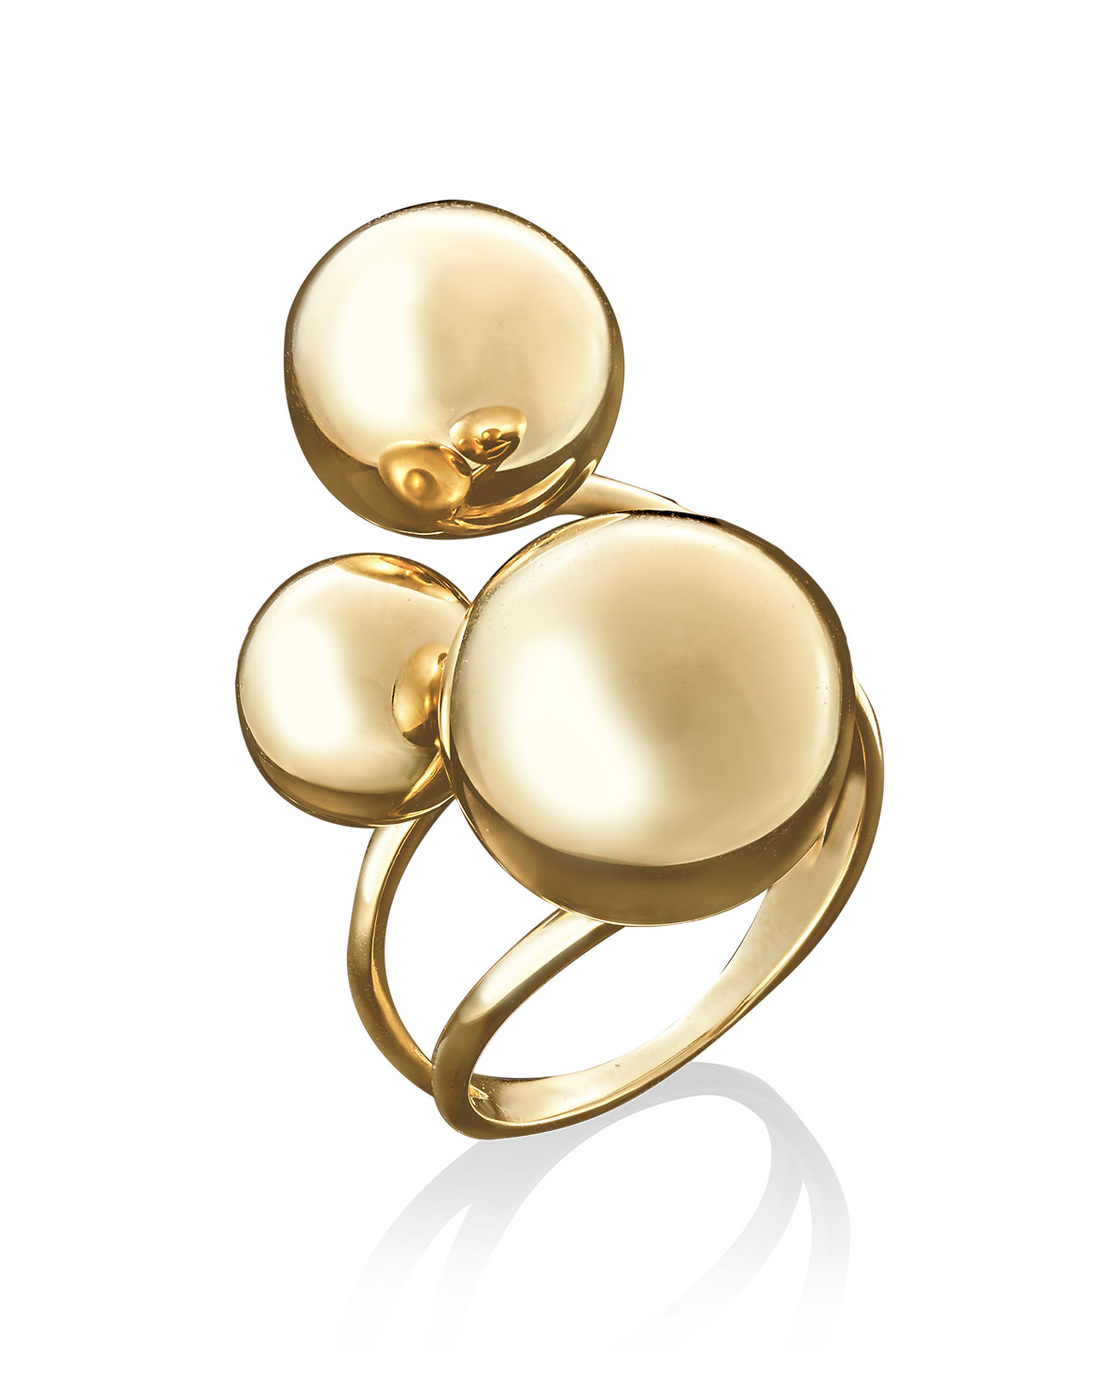 Золотое кольцо с шариками из золота